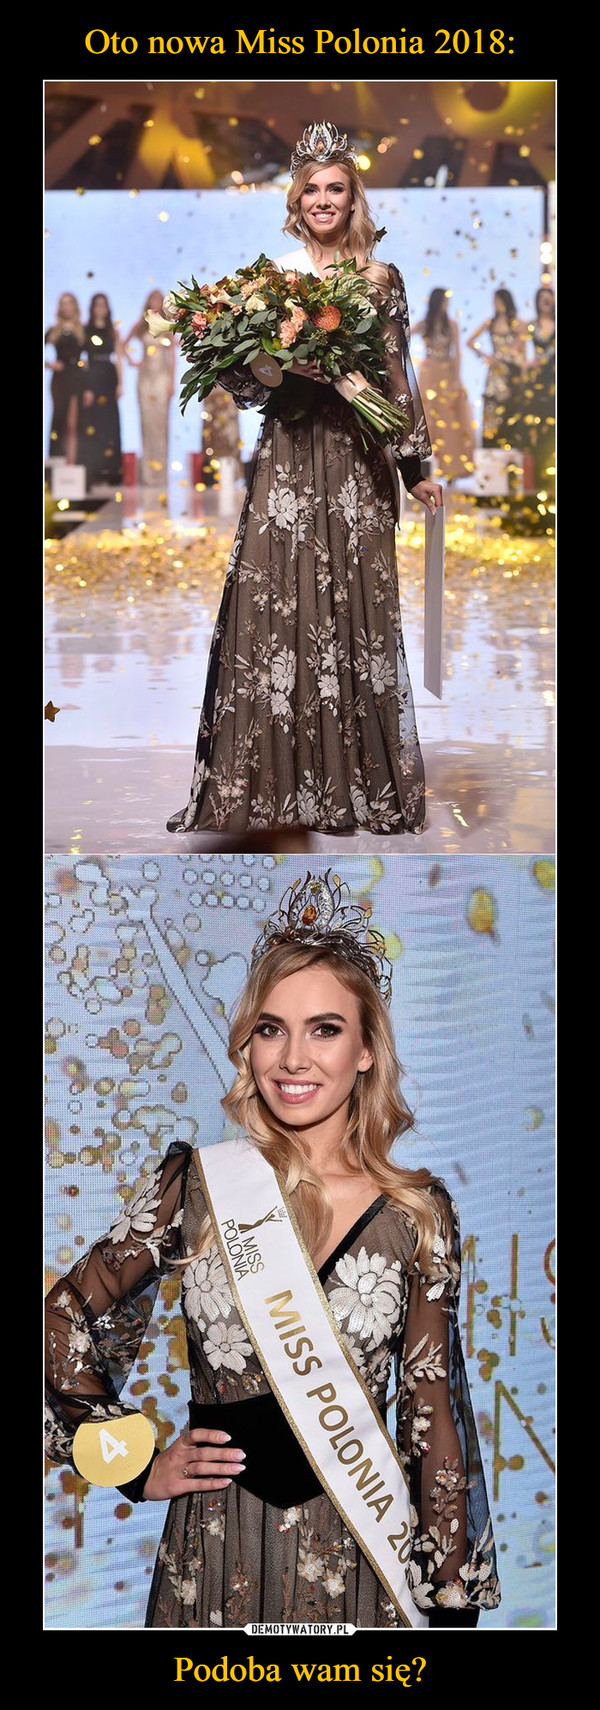 Oto nowa Miss Polonia 2018: Podoba wam się?